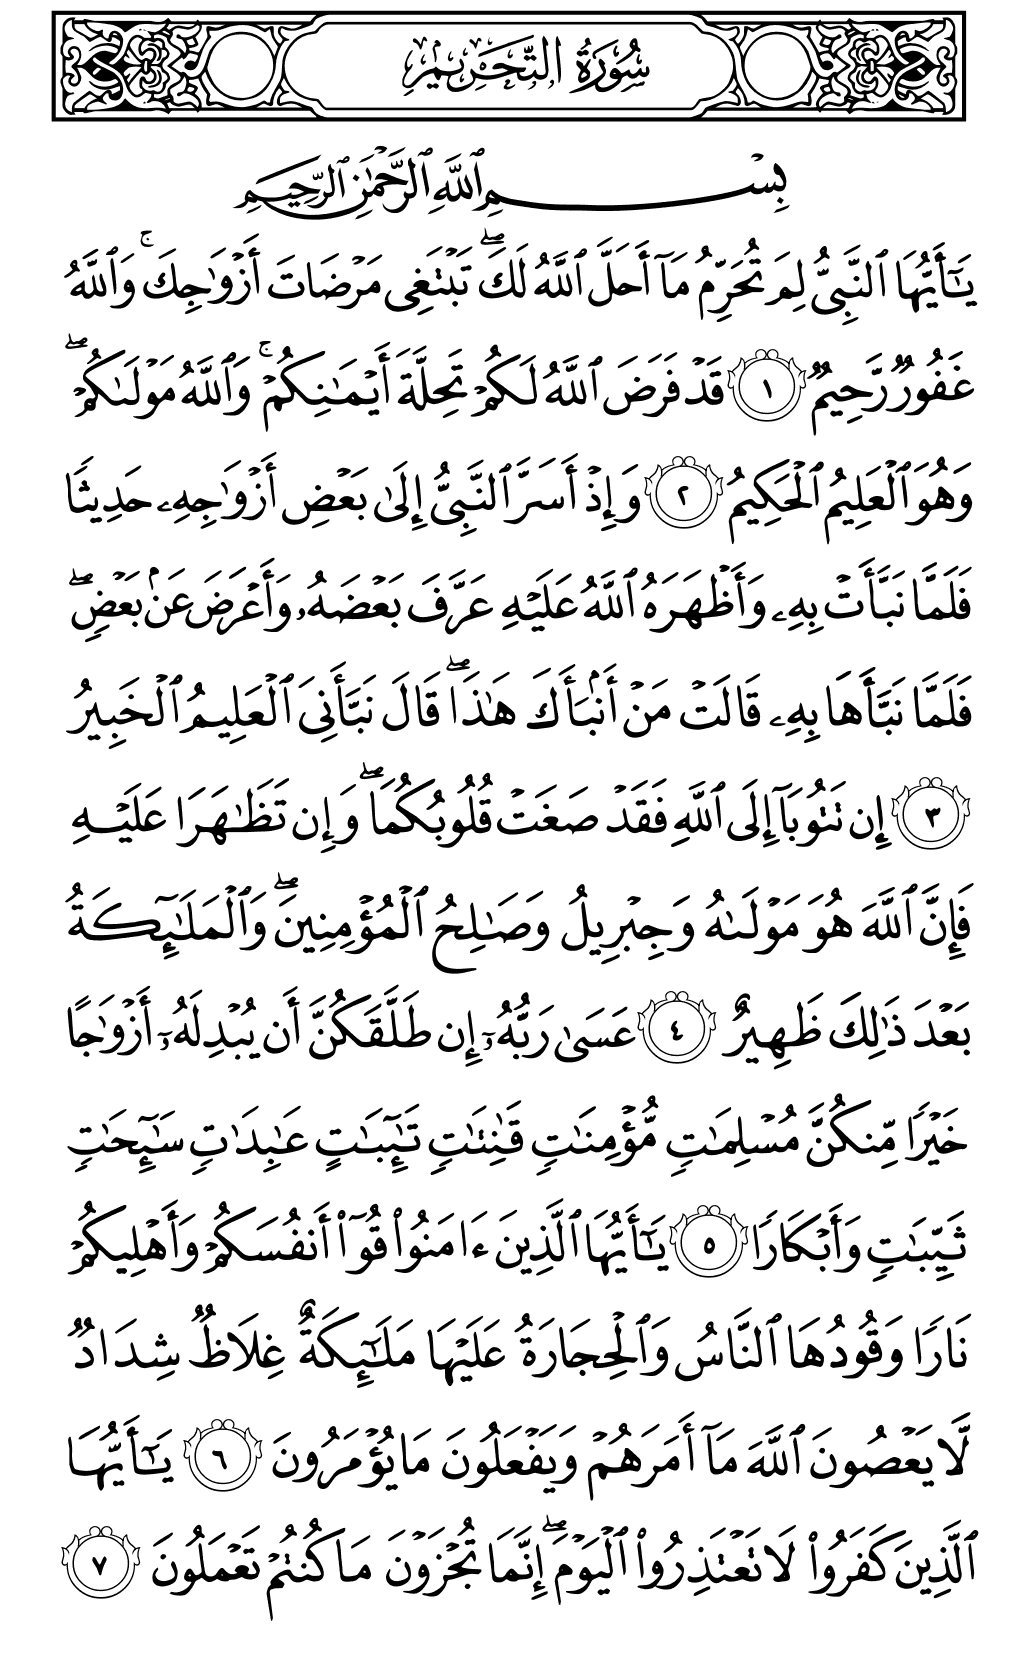 الصفحة رقم 560 من القرآن الكريم